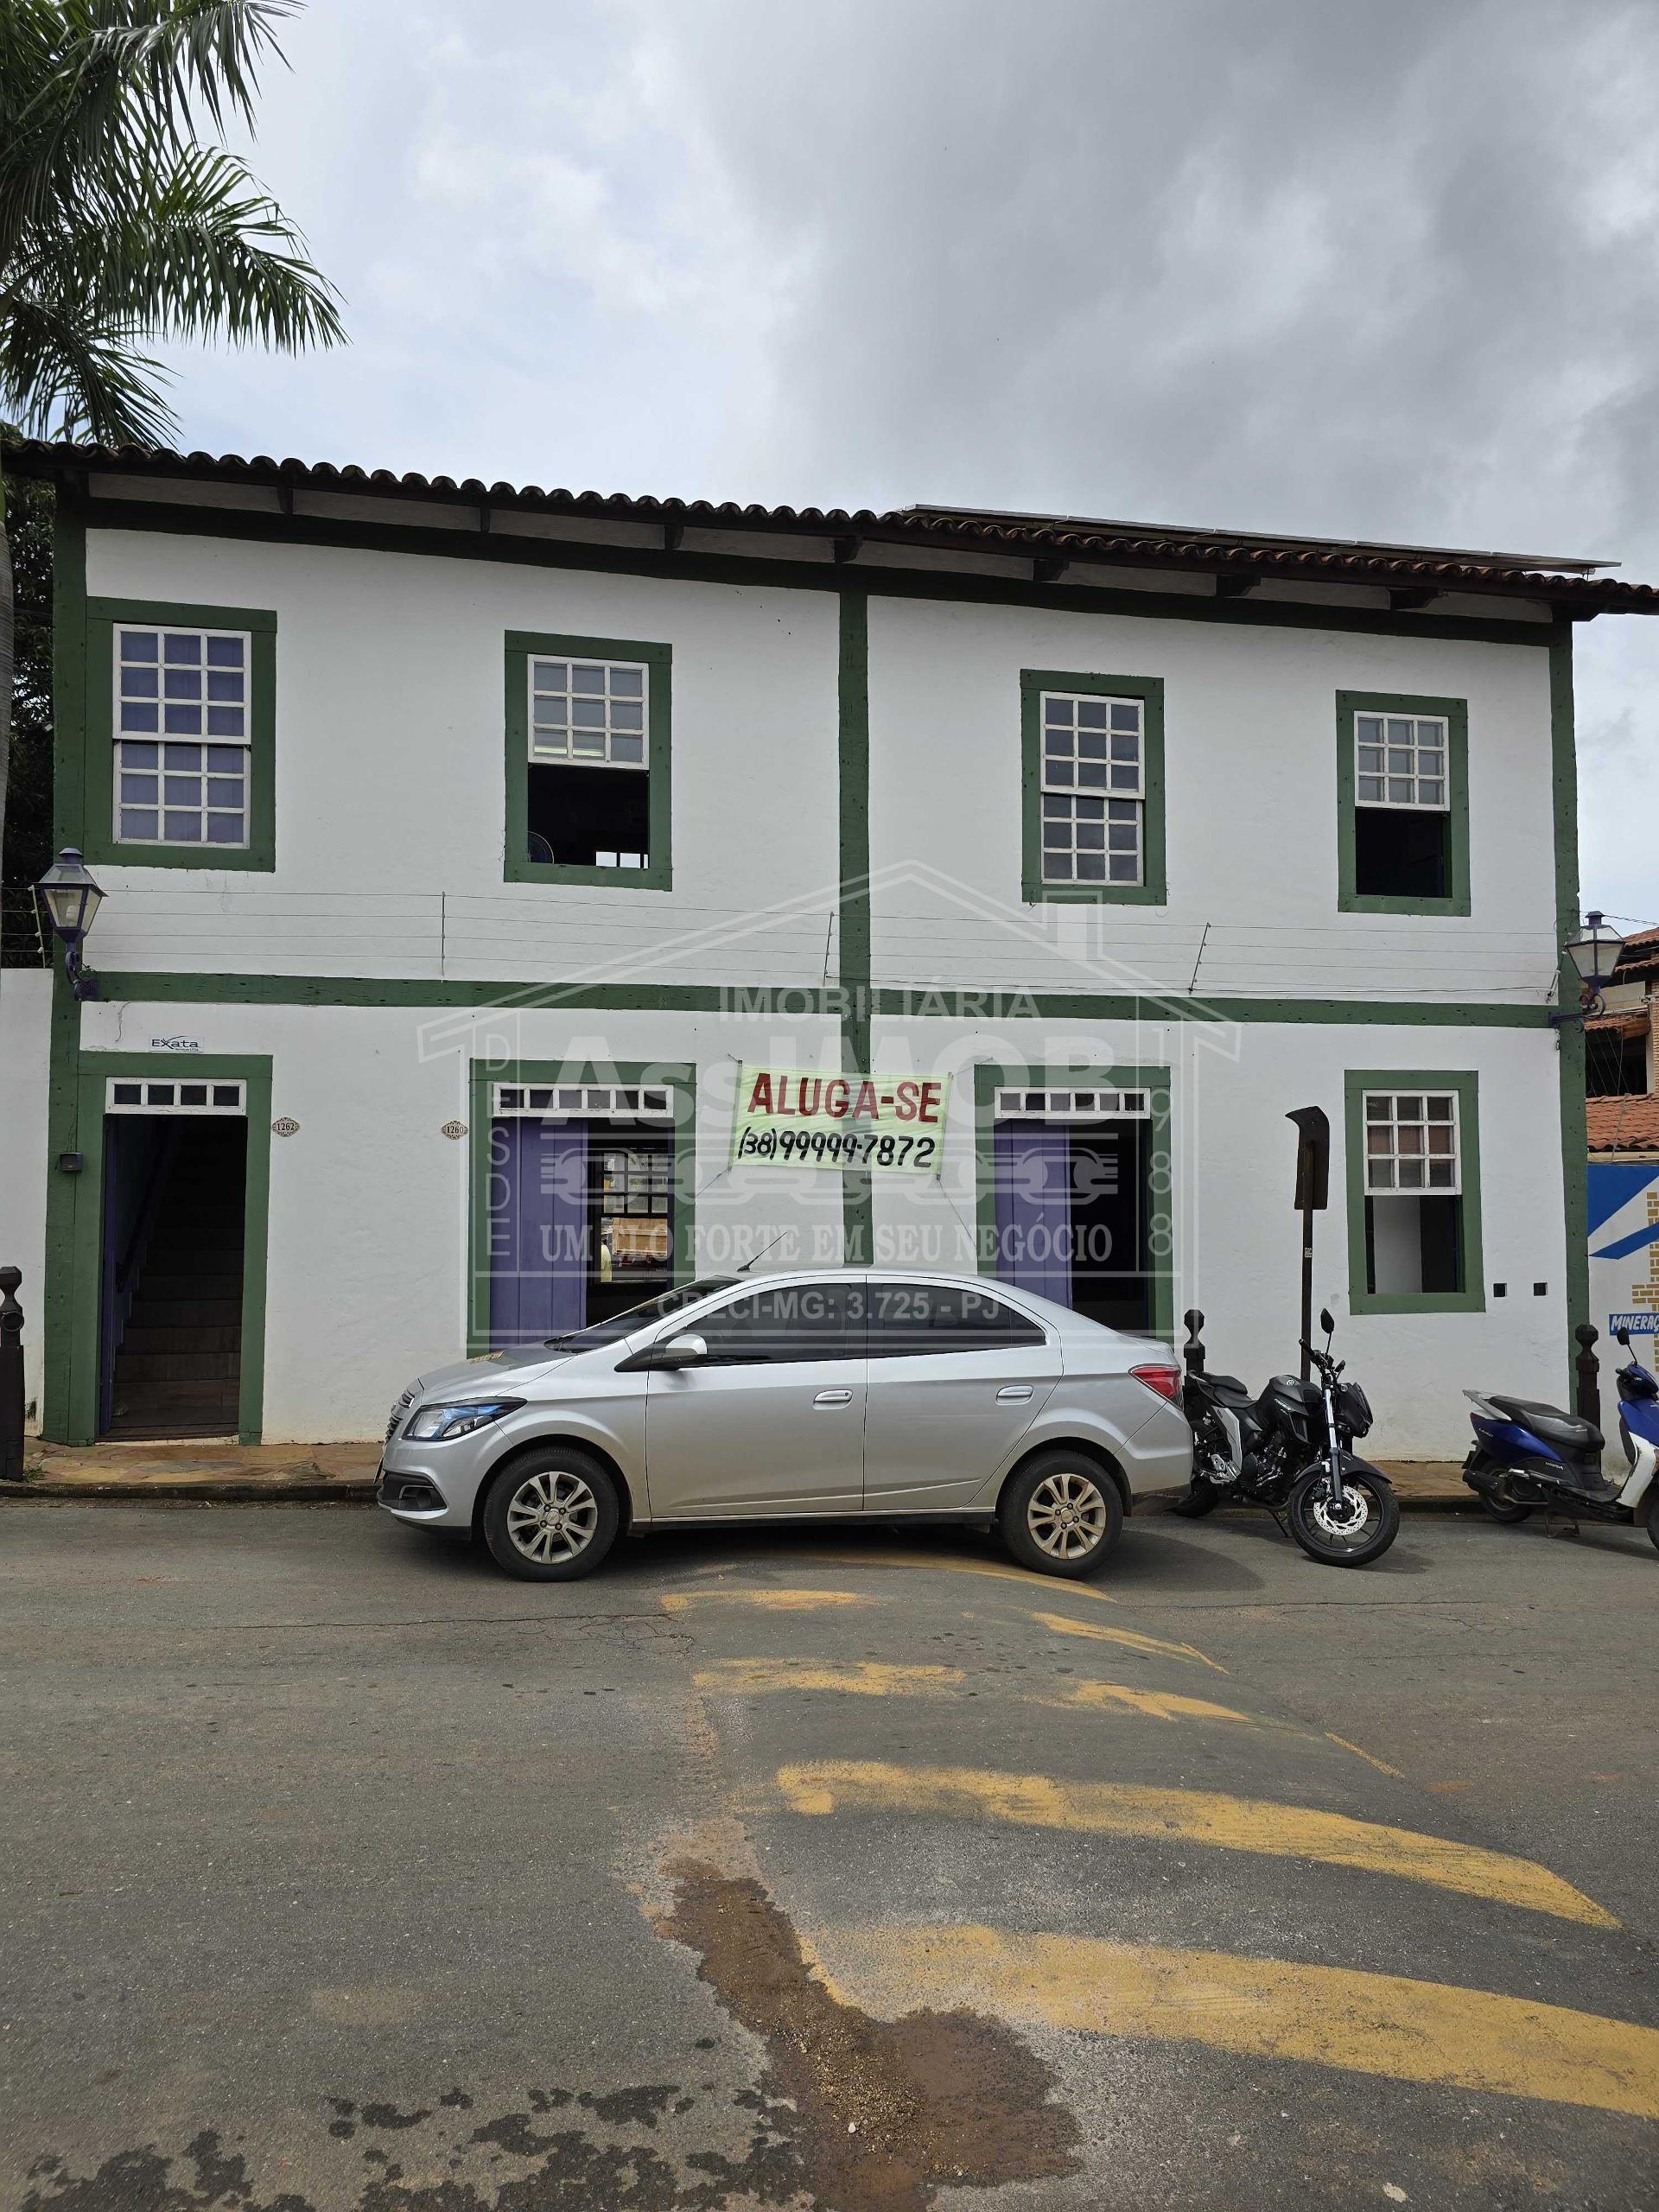 Loja comercial na Rua Rio Grande do Sul  no bairro Centro em Paracatu-MG